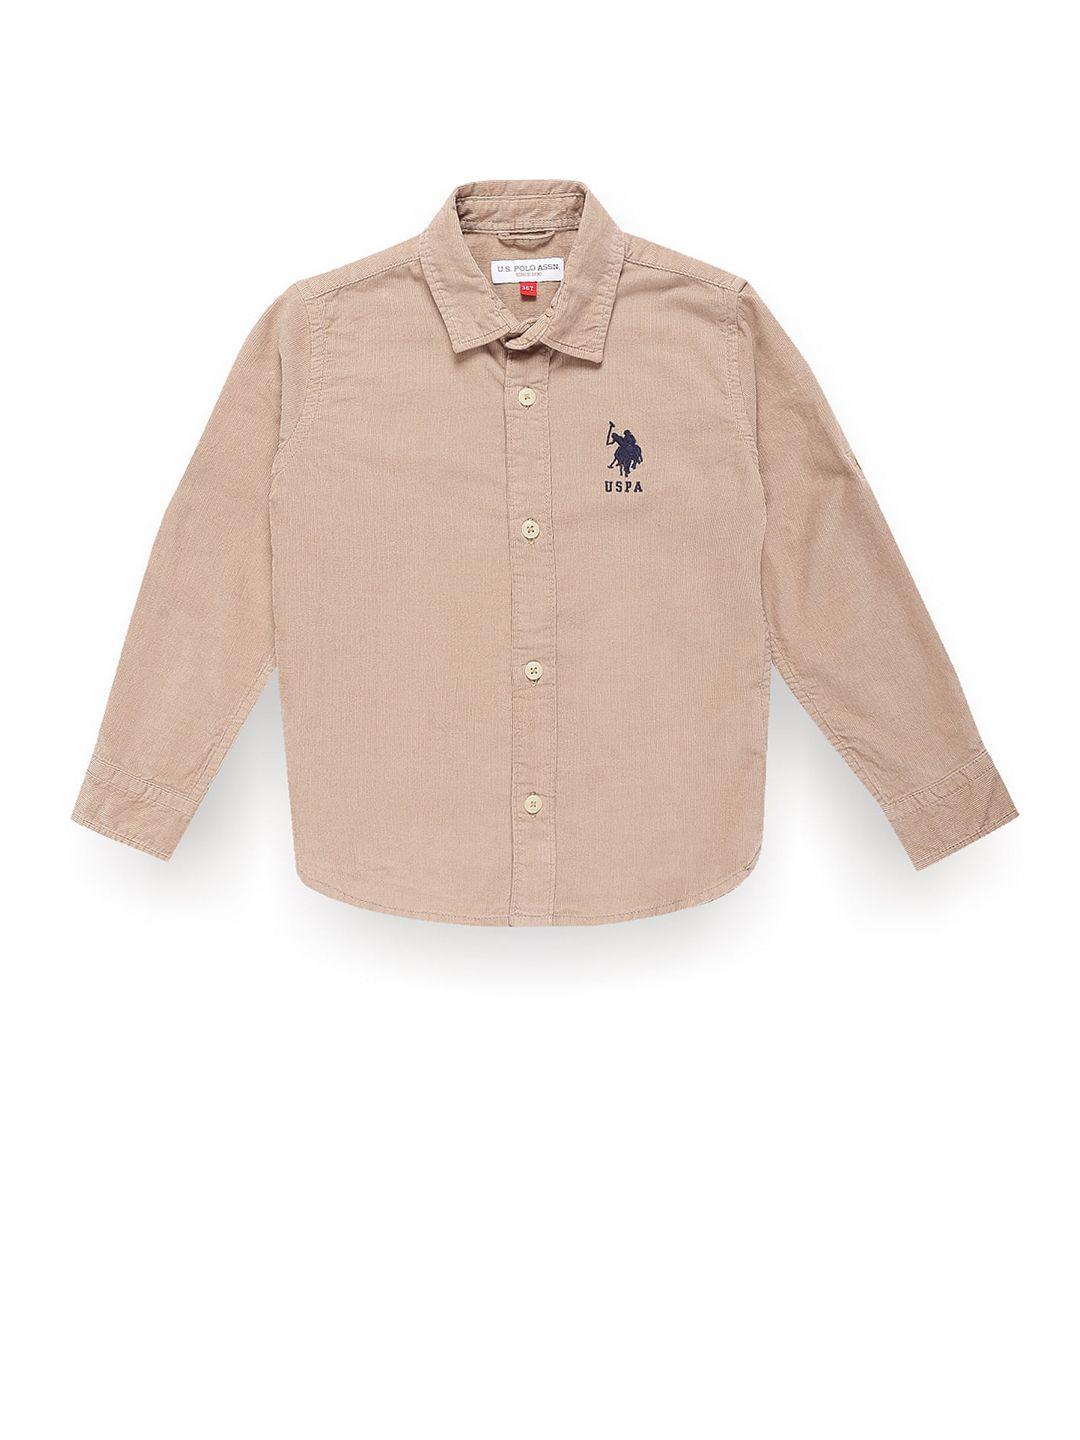 u.s. polo assn. kids boys classic corduroy pure cotton casual shirt